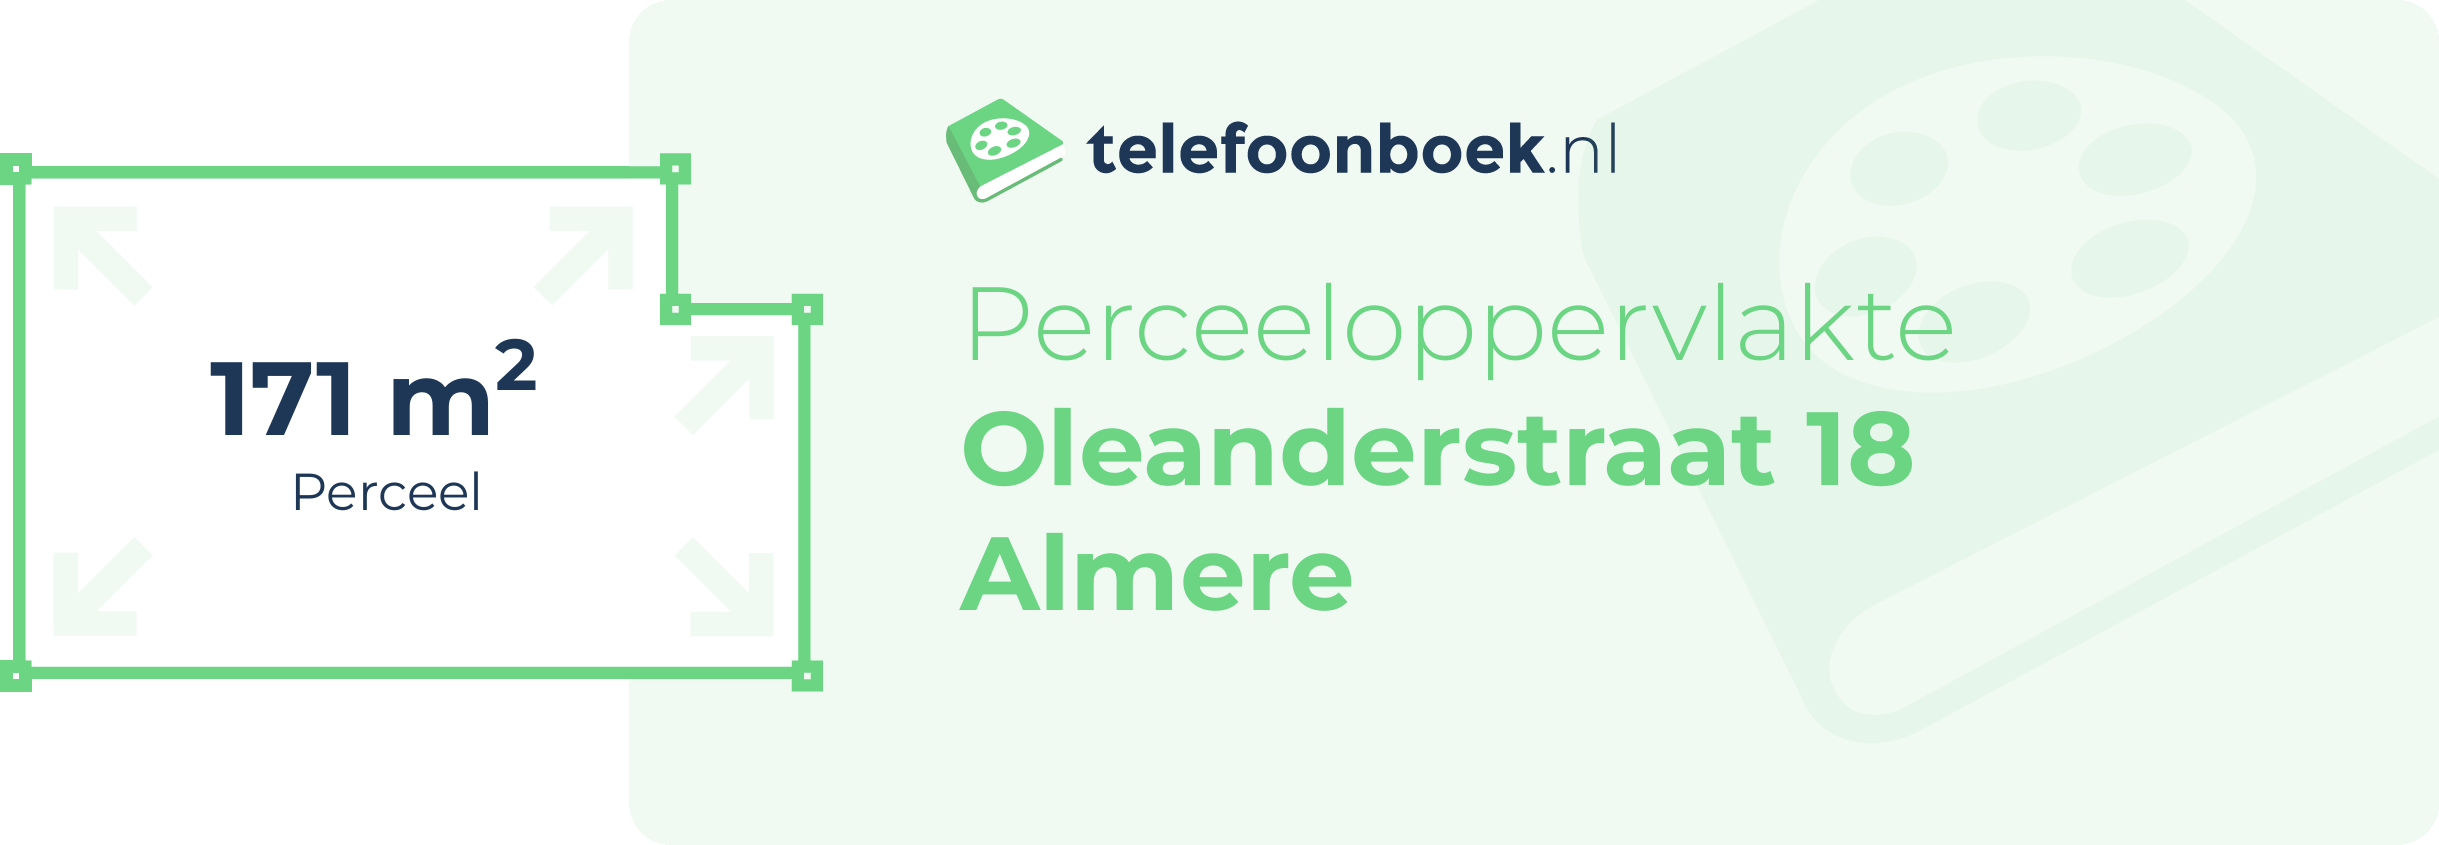 Perceeloppervlakte Oleanderstraat 18 Almere